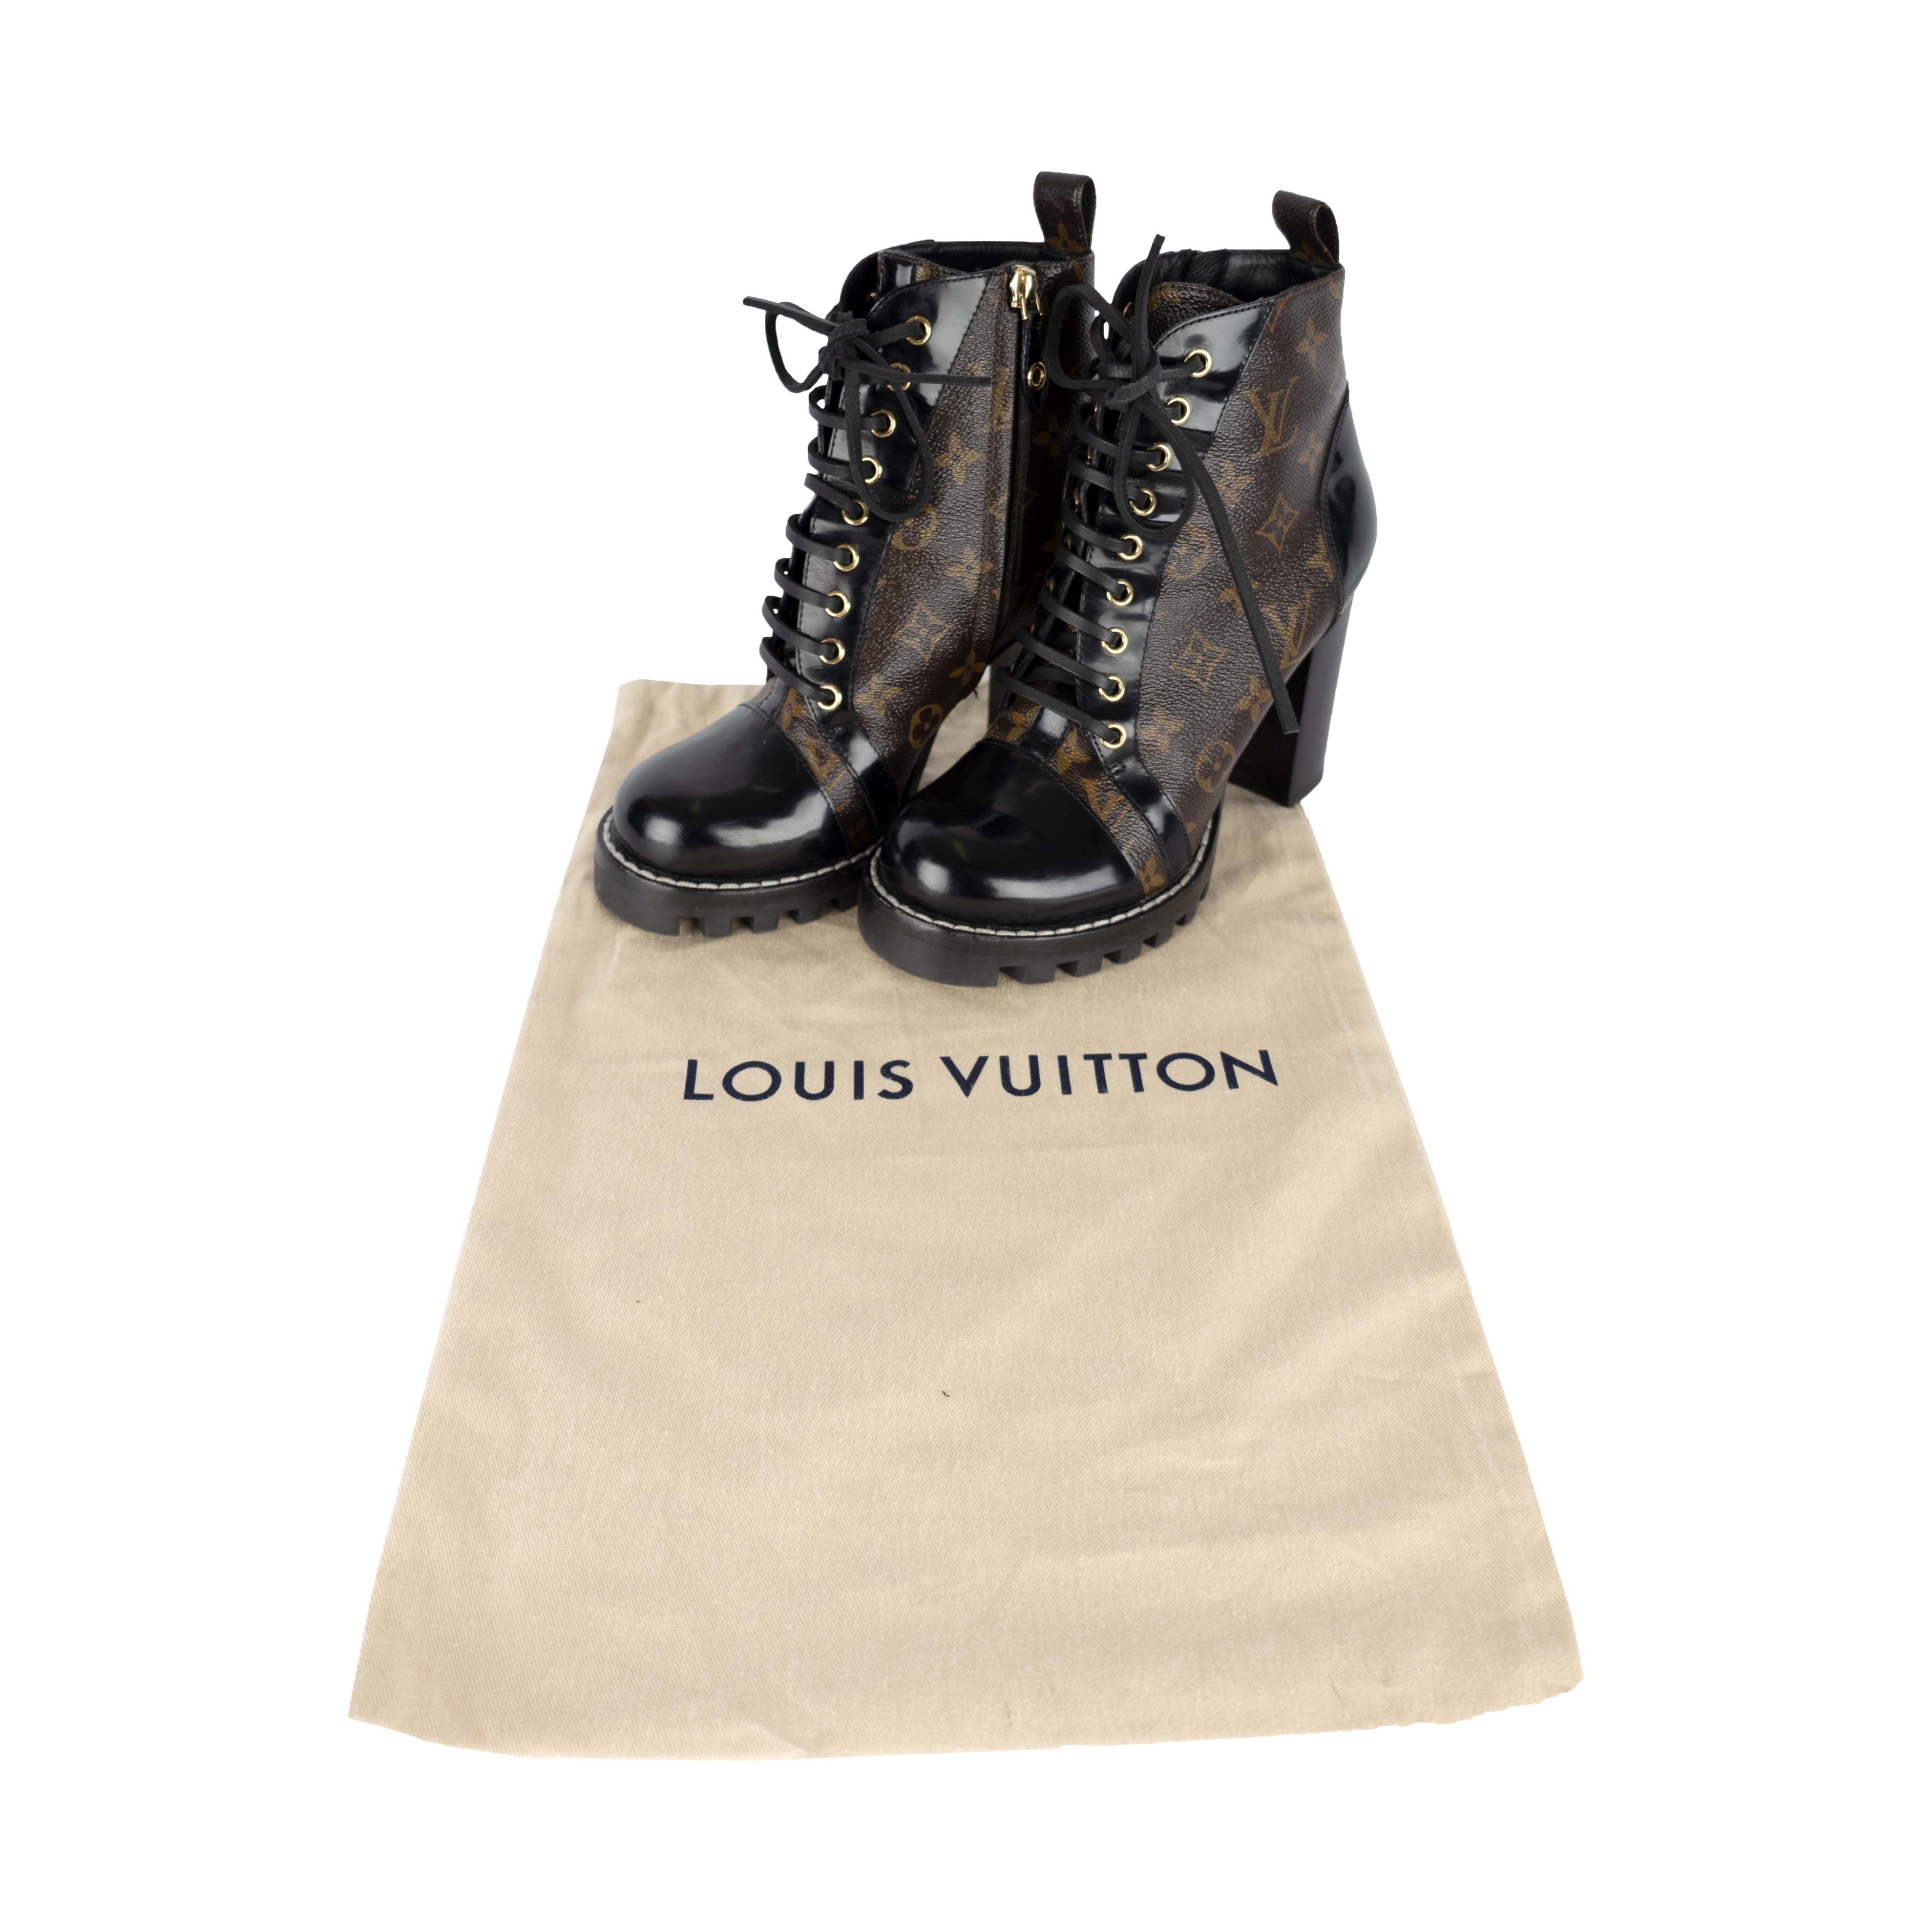 Louis vuitton combat boots, Louis vuitton boots, Boots outfit ankle